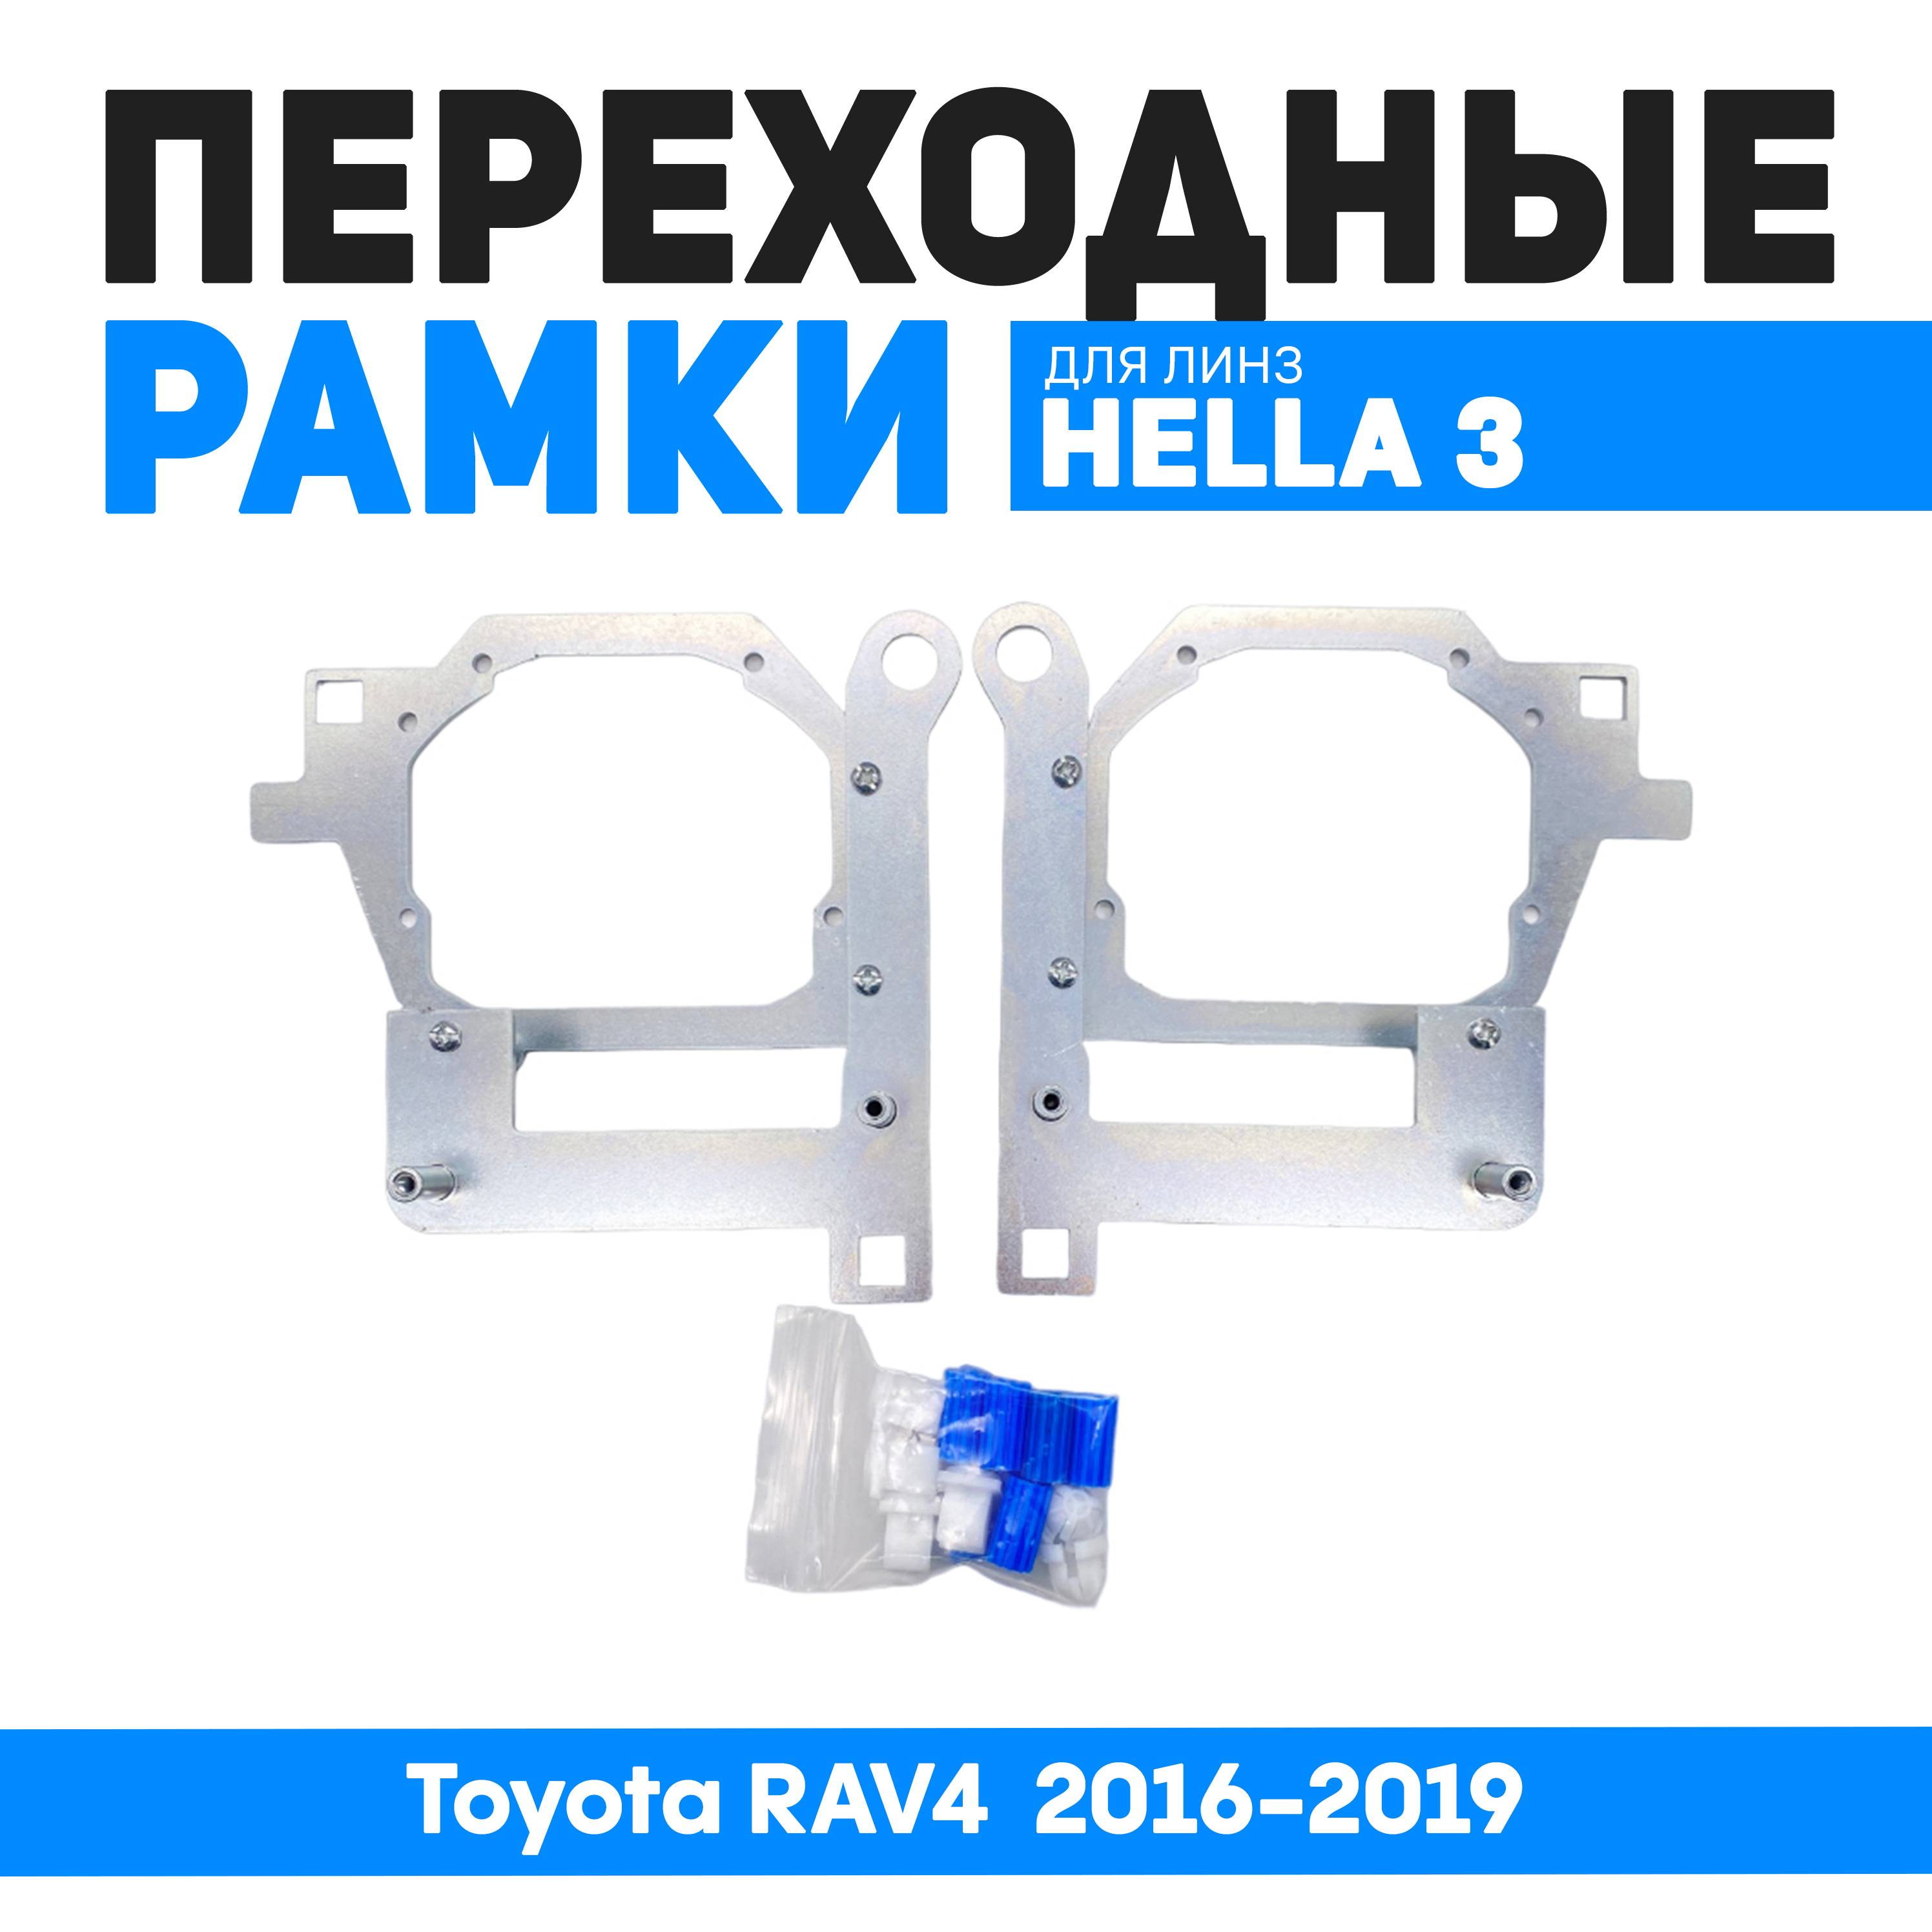 Переходные рамки Bunker-Svet Toyota RAV4 2016-2019